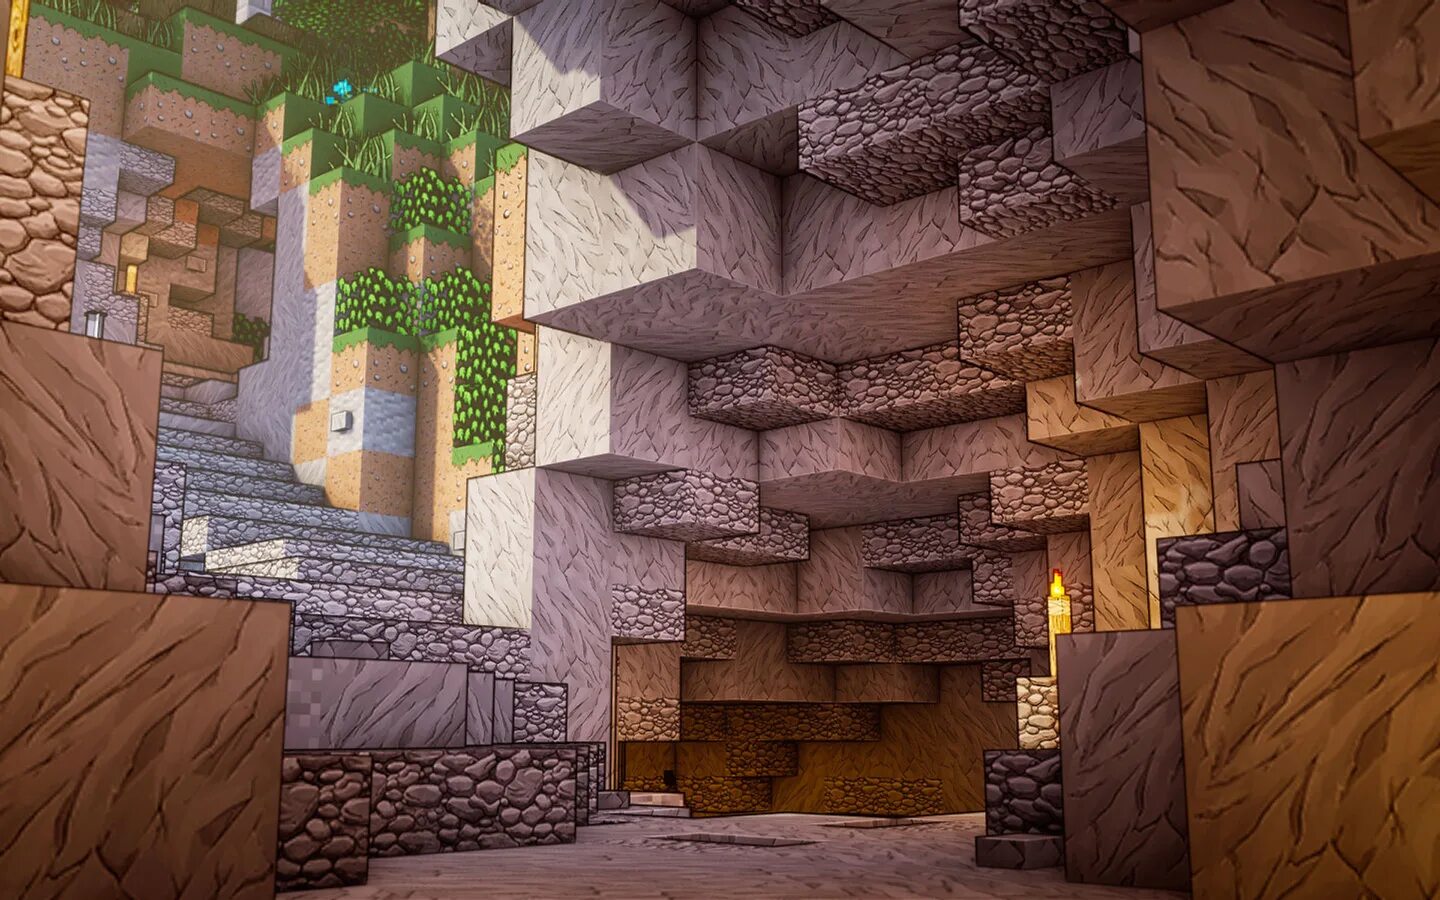 Minecraft textures. Блоки майнкрафт 1.14.4. Текстуры майнкрафт. Каменная стена майнкрафт. Обои в стиле МАЙНКРАФТА.